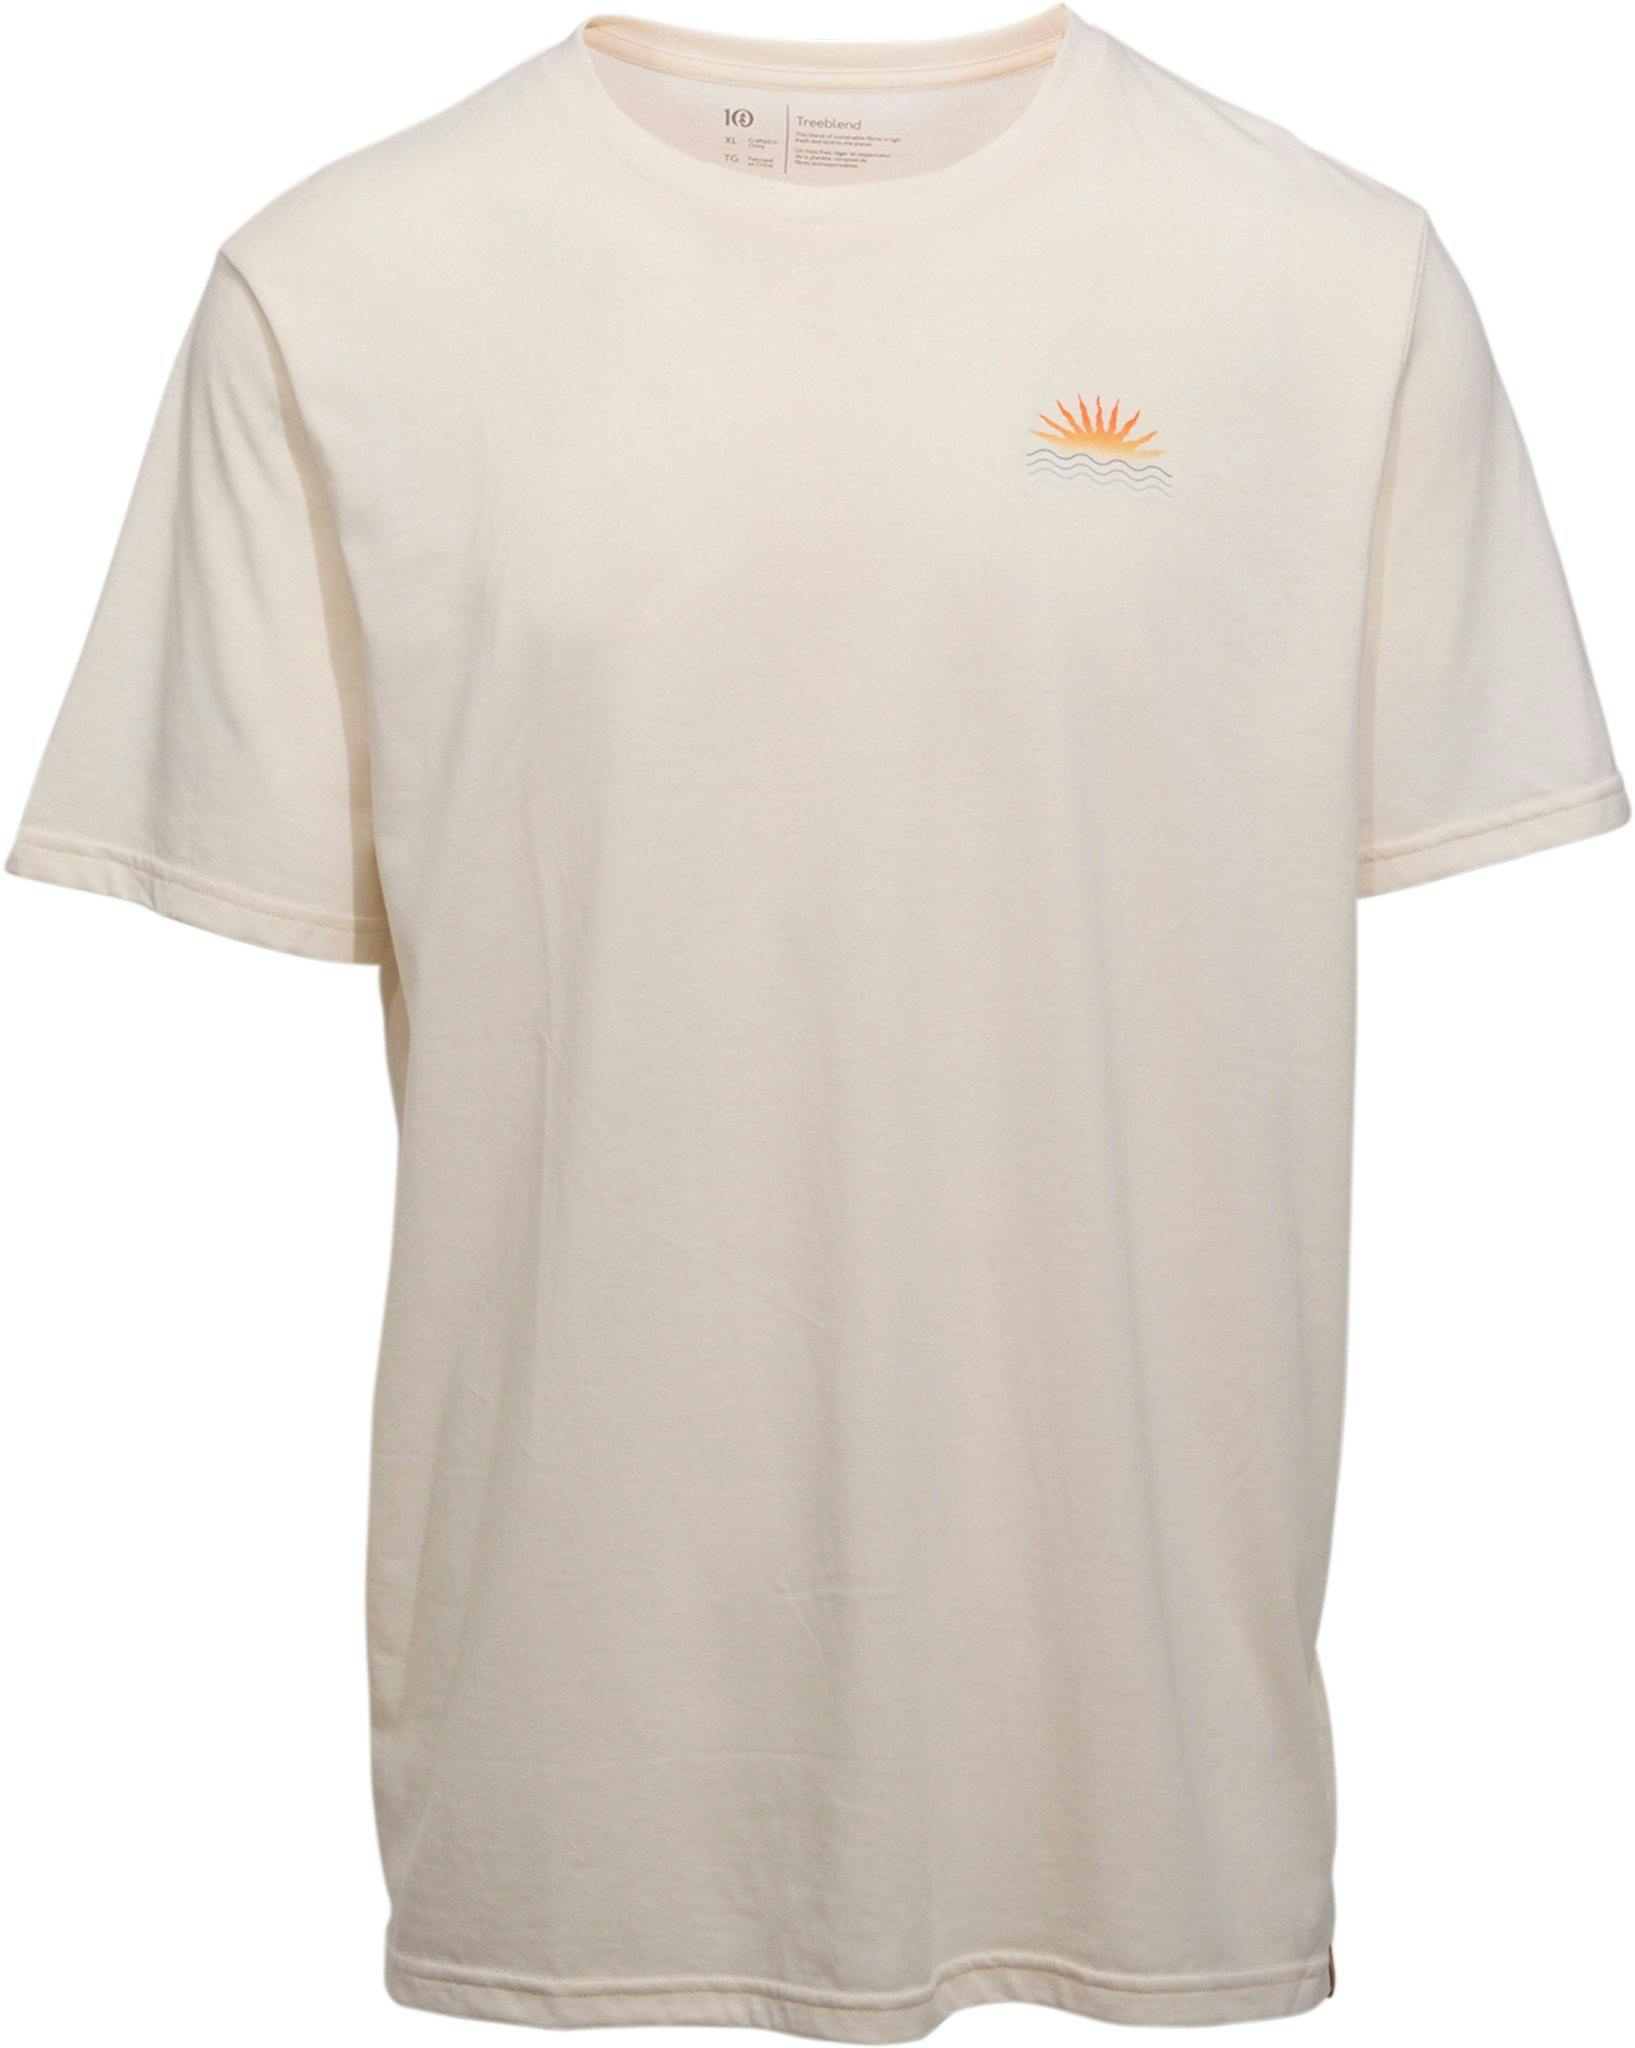 Image de produit pour T-shirt Sunset Tentree - Homme